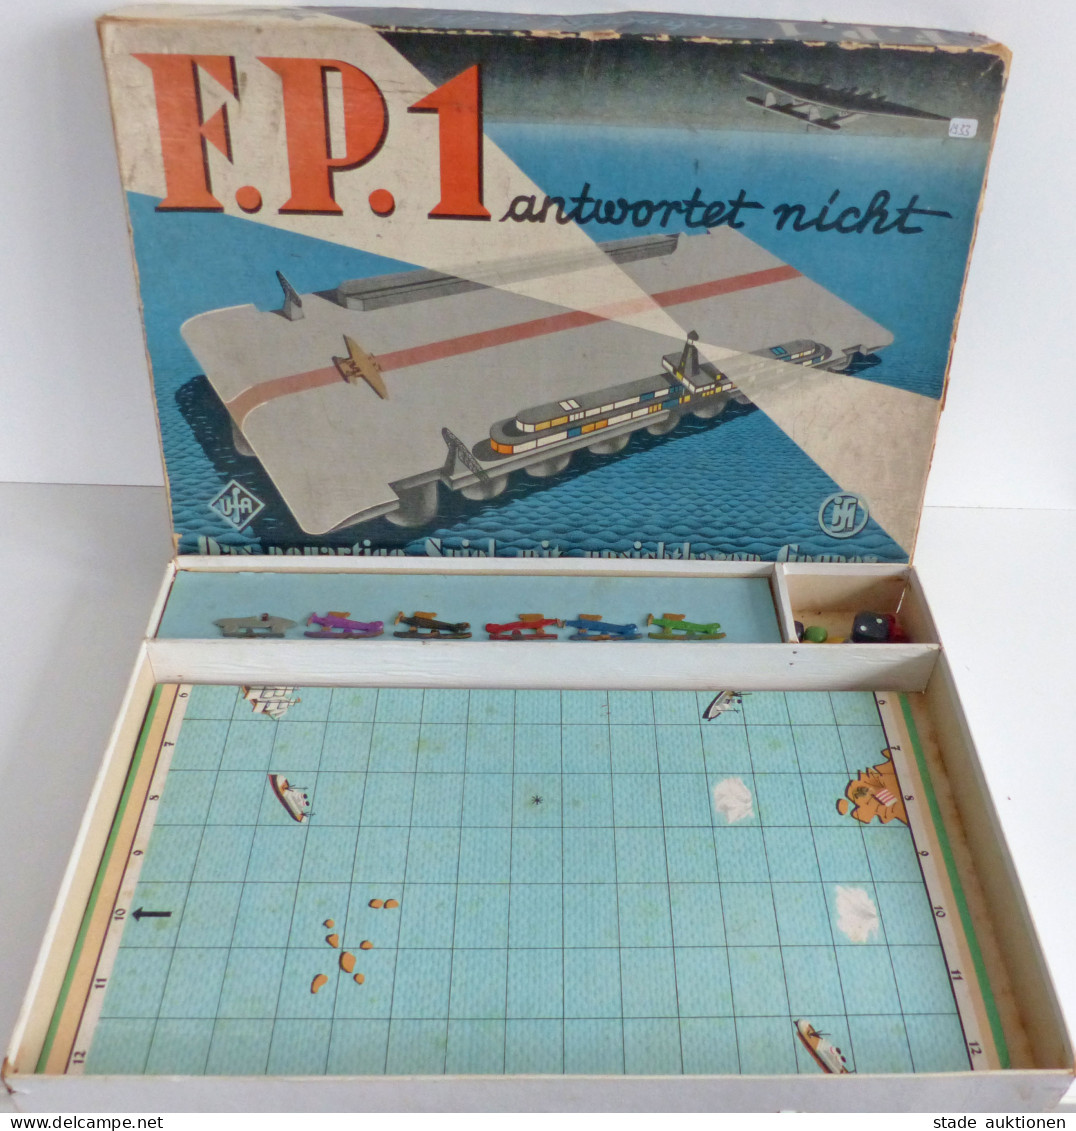 Spielzeug F.P.1 Antwortet Nicht Das Neuartige Spiel Mit Unsichtbaren Gegnern Von 1933, Originalverpackung 1 Flugzeug Feh - Juegos Y Juguetes